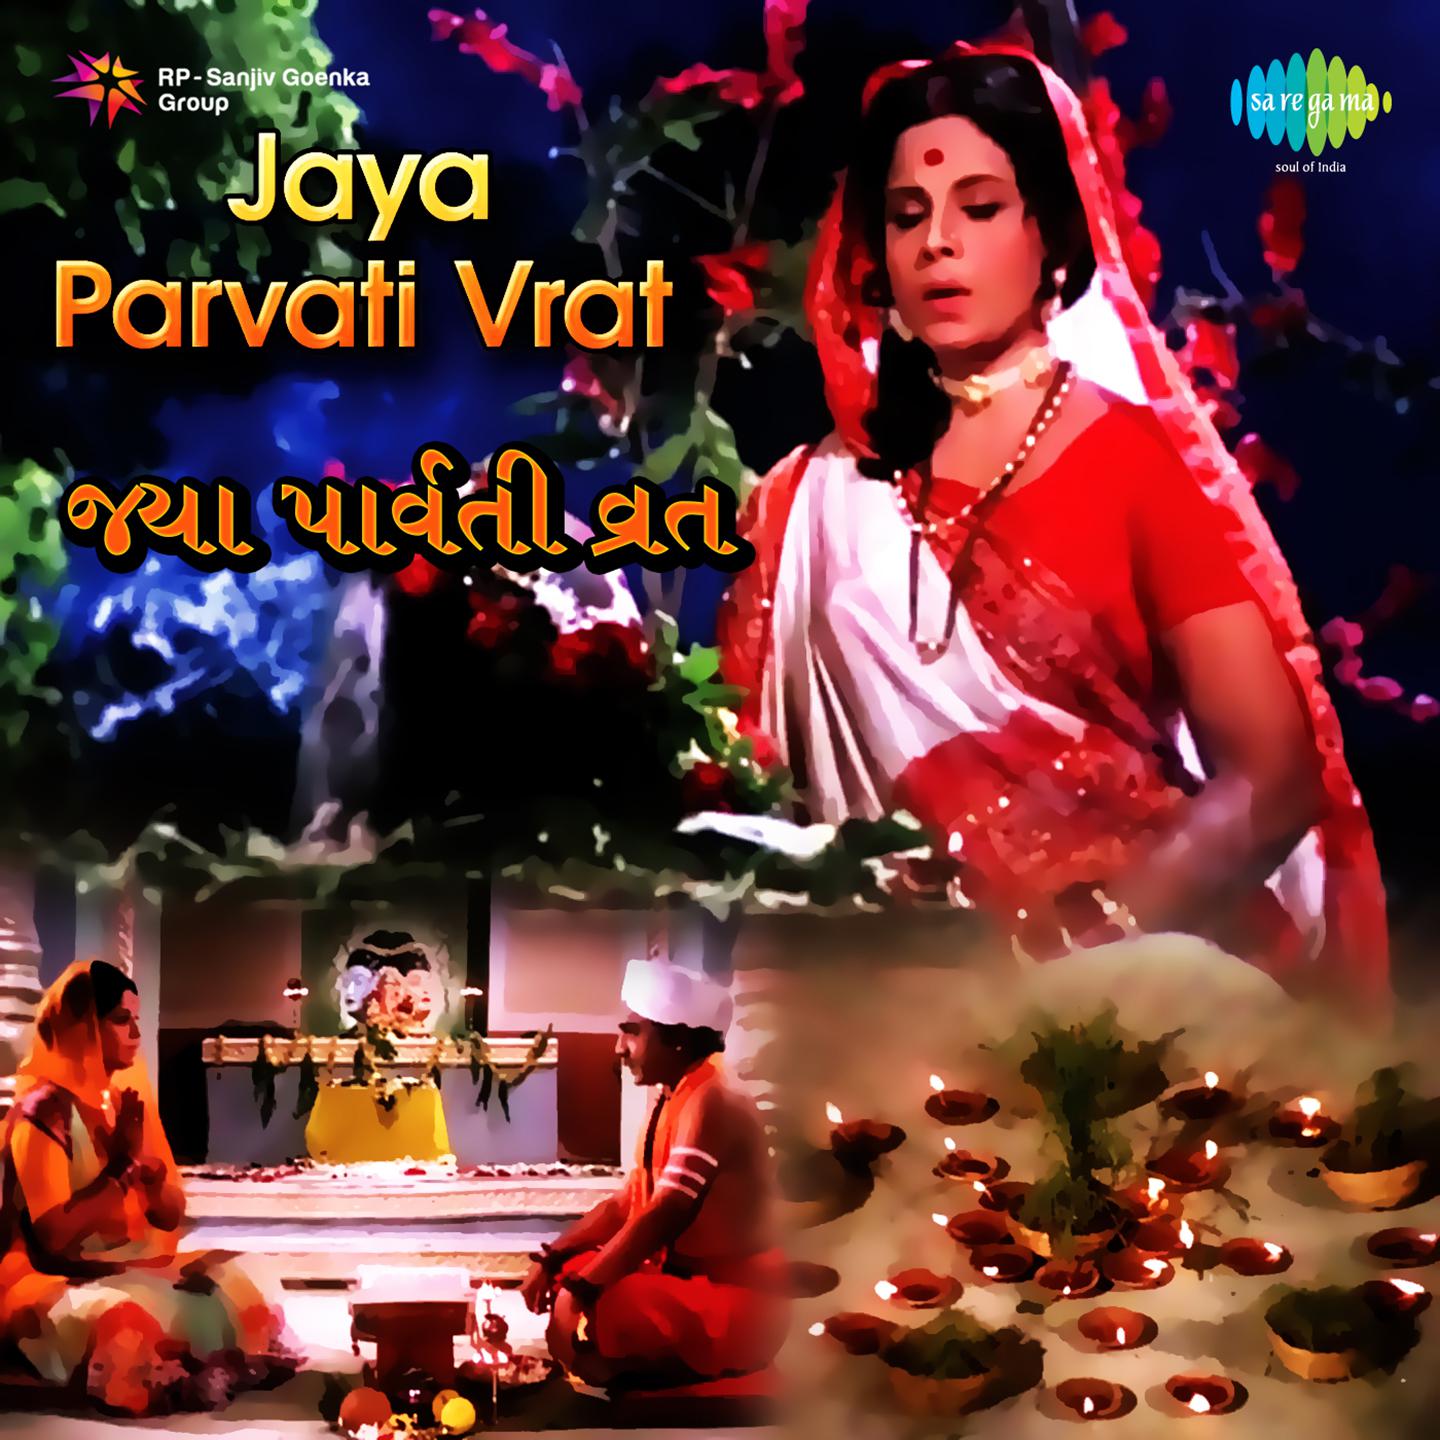 He Mat Jaya Parvati